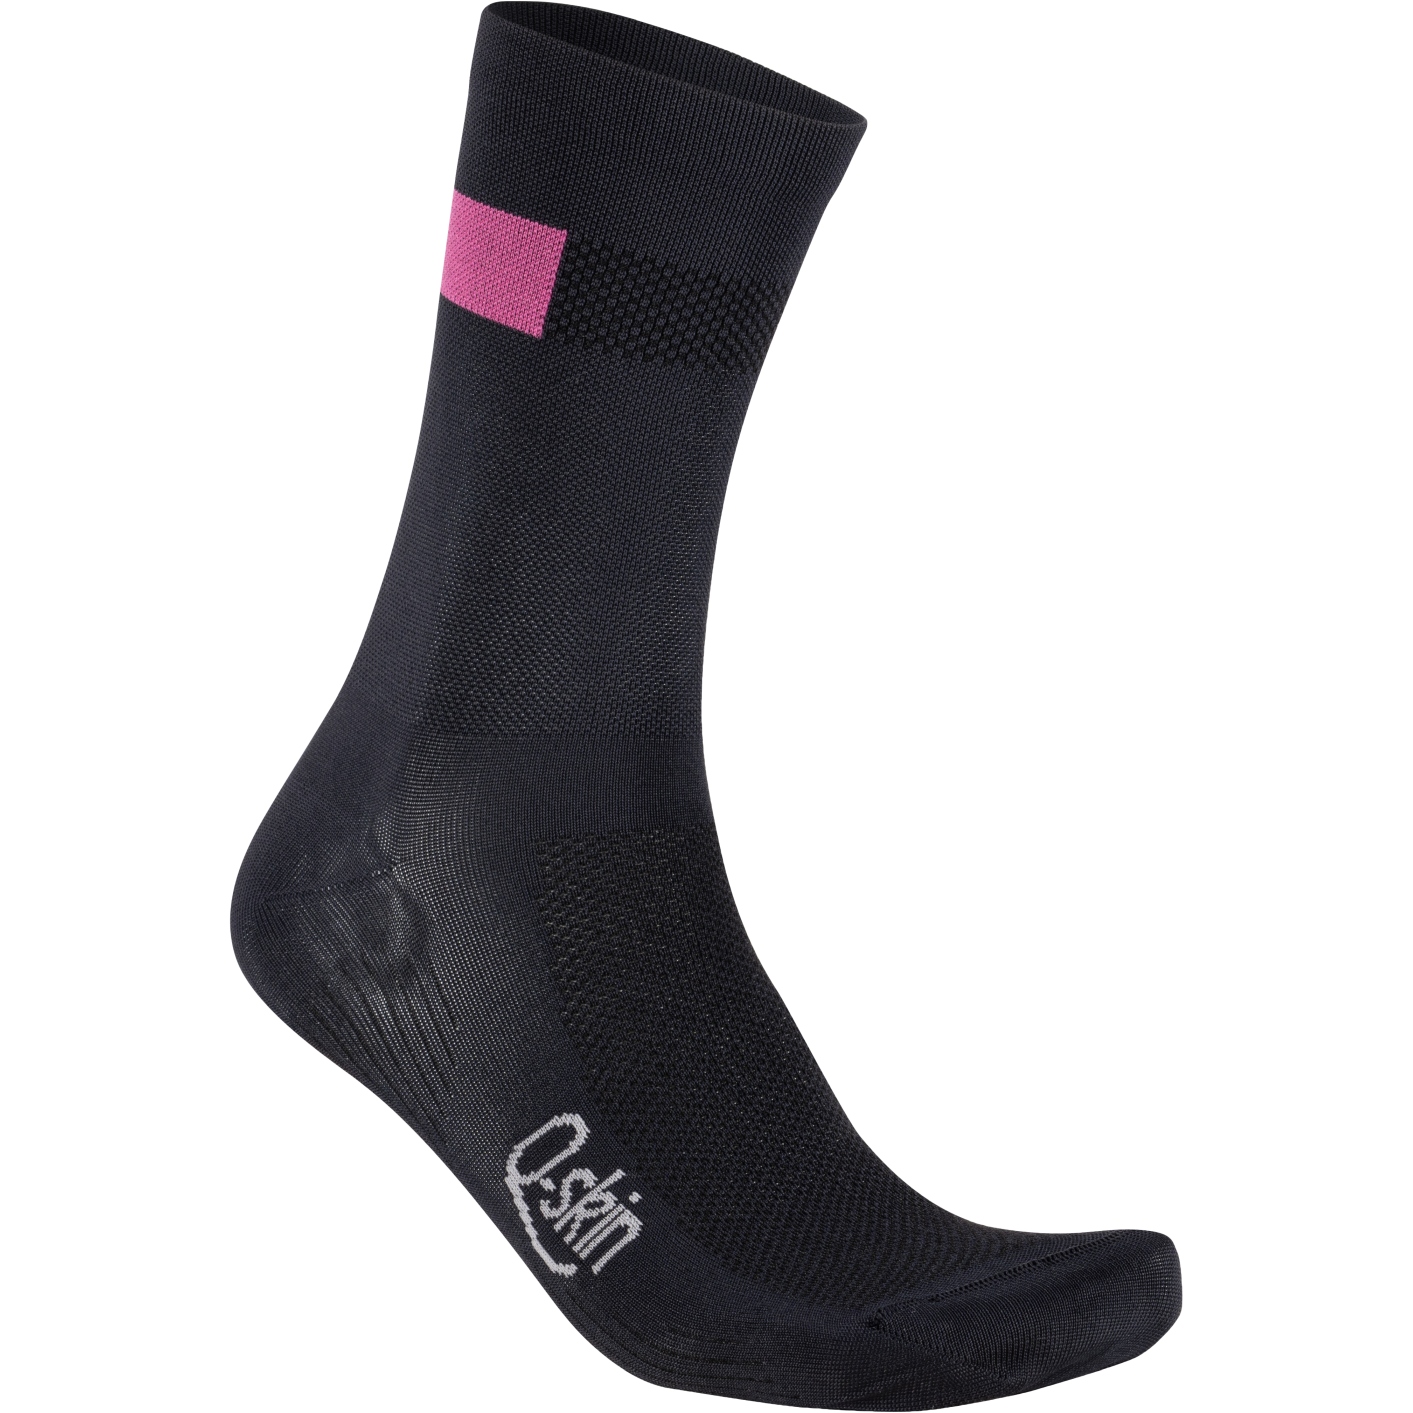 Produktbild von Sportful Snap Socken Damen - 002 Black Carmine Rose